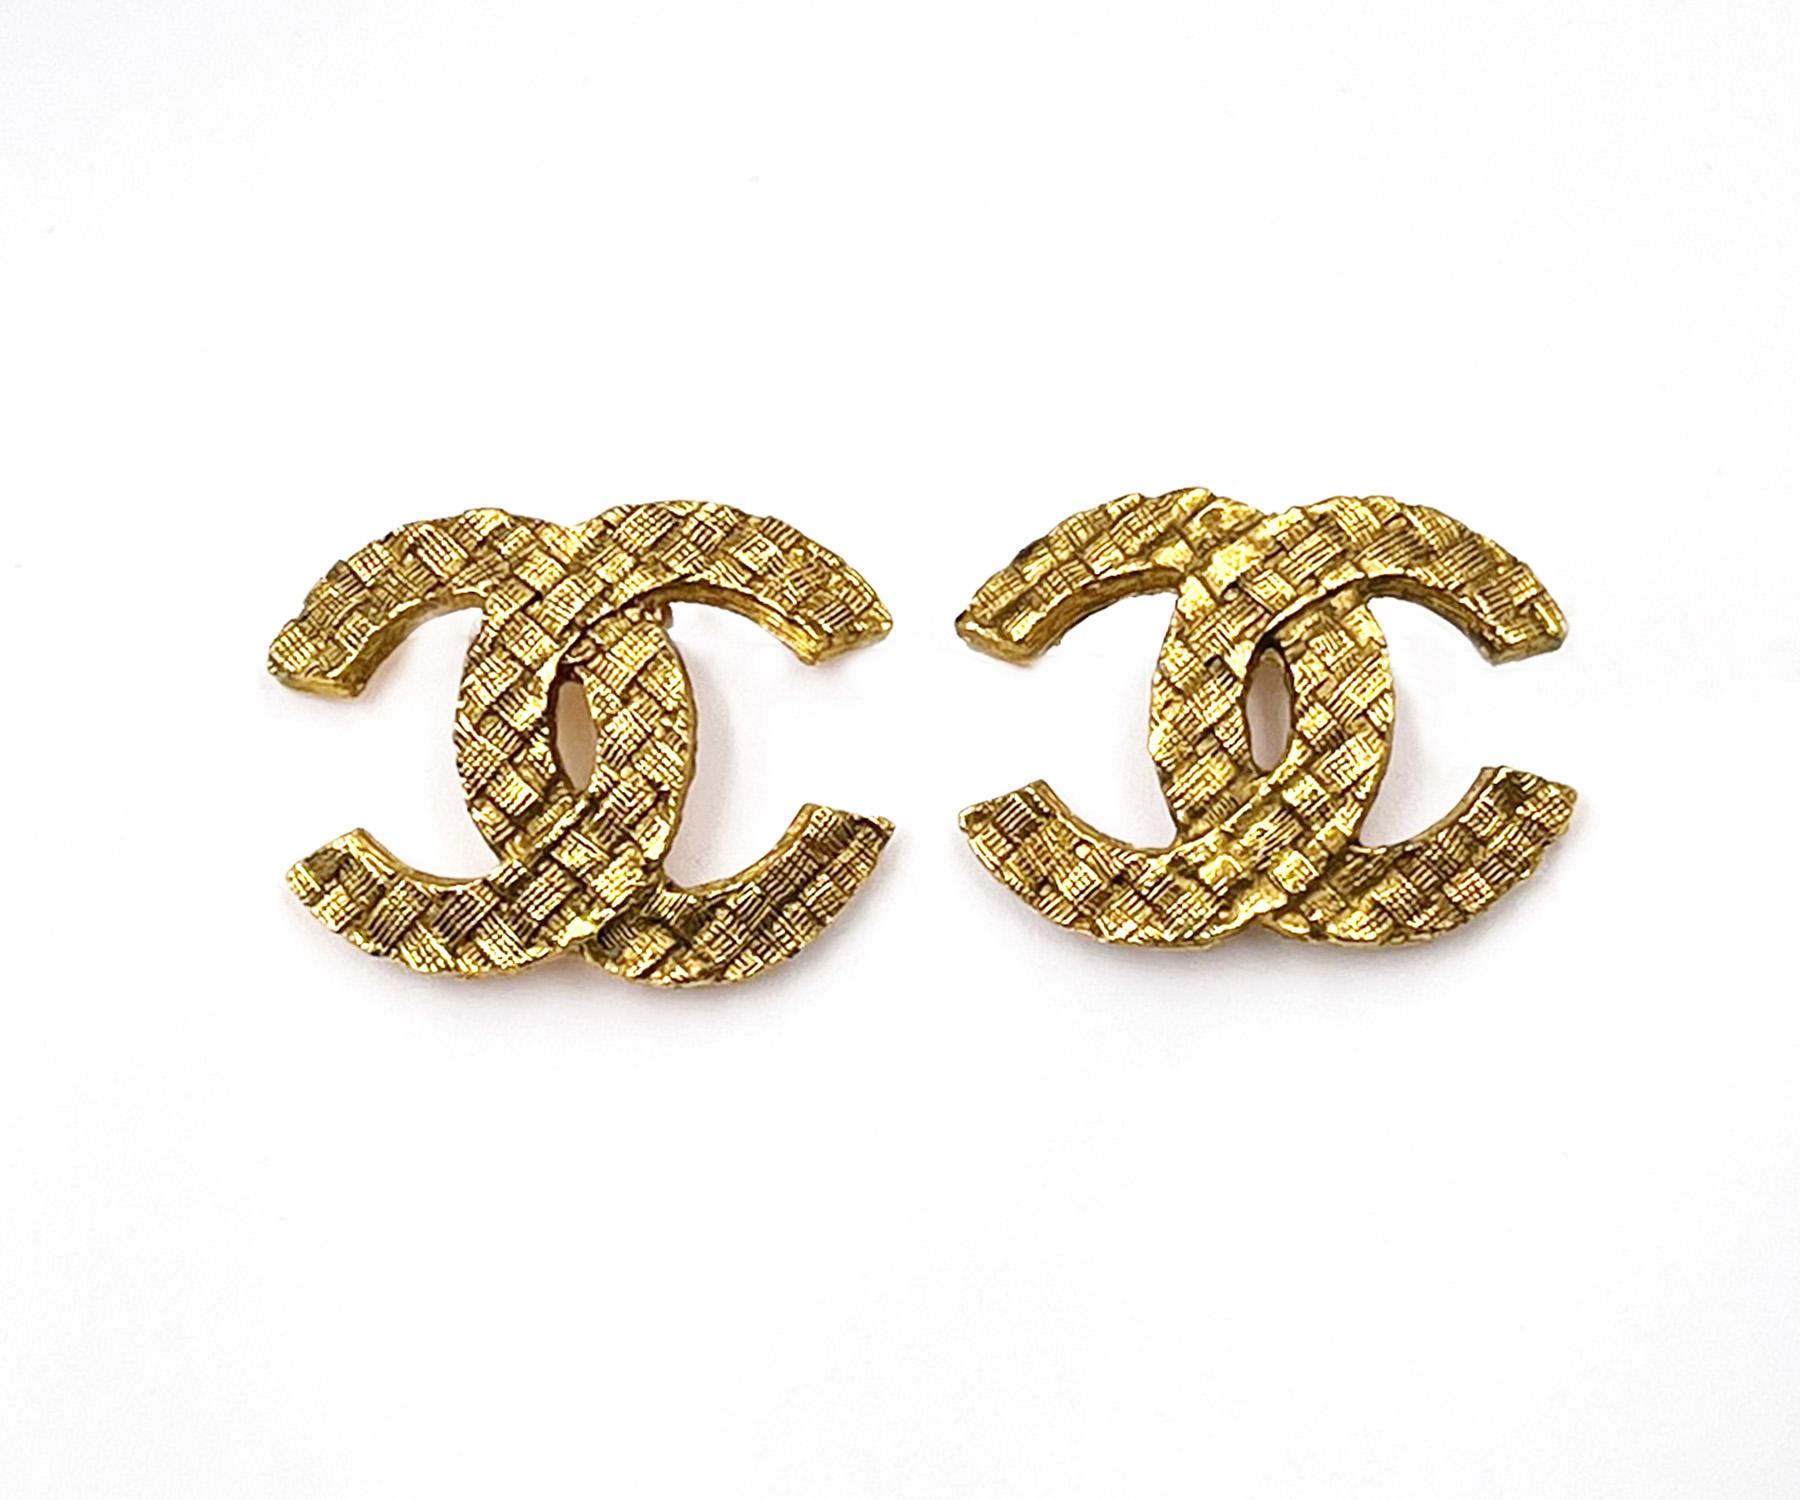 Chanel Vintage Vergoldete CC Korbgeflecht-Ohrclips

* Markiert Chanel und 2913
* Hergestellt in Frankreich
* Kommt mit dem Originalkarton

-Sie ist ungefähr 1